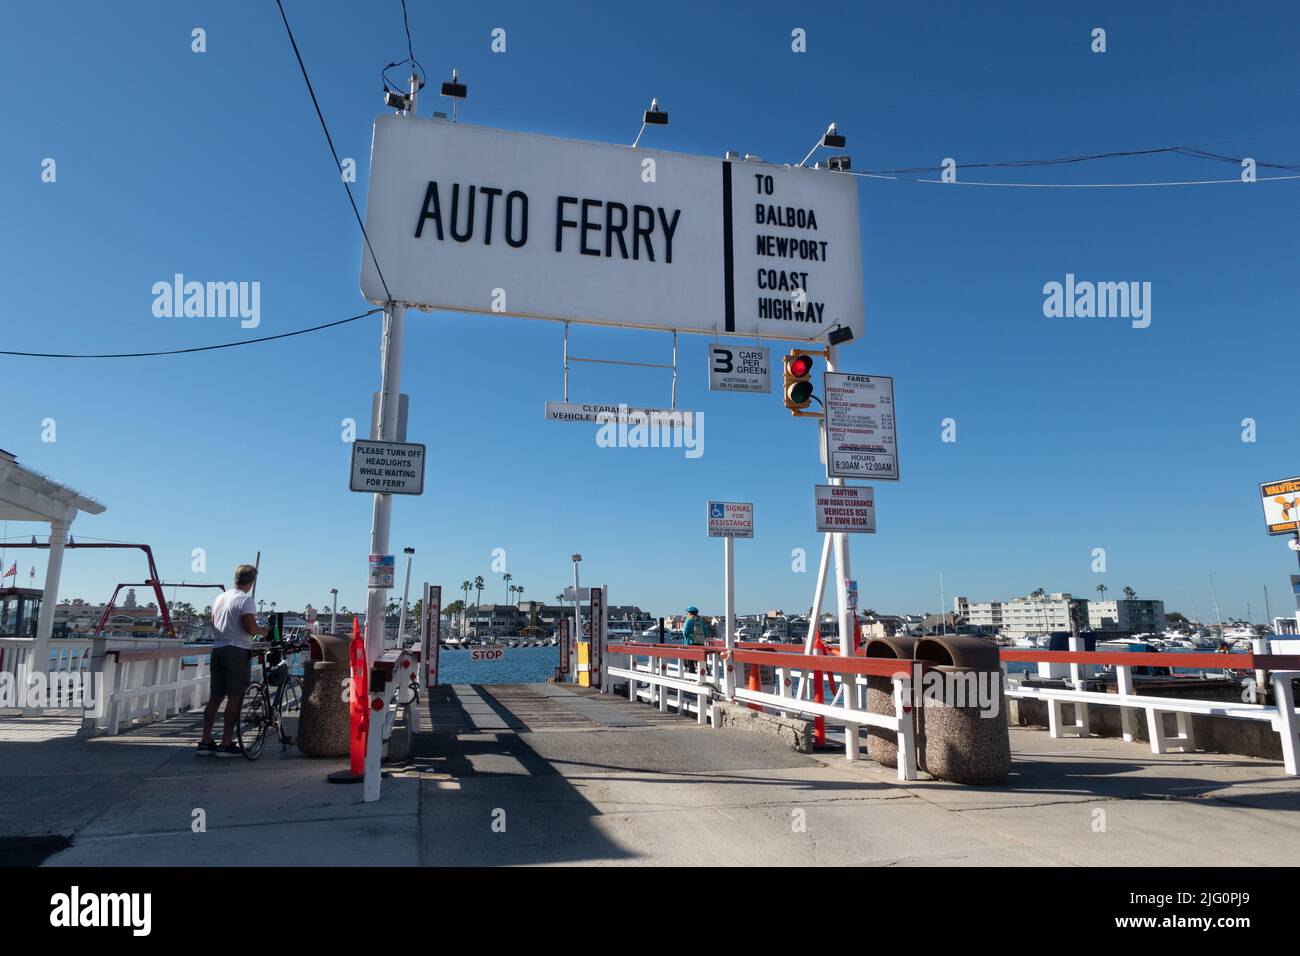 Antigua entrada de ferry para coches pequeños en Balboa Island Newport Beach Southern california USA Foto de stock